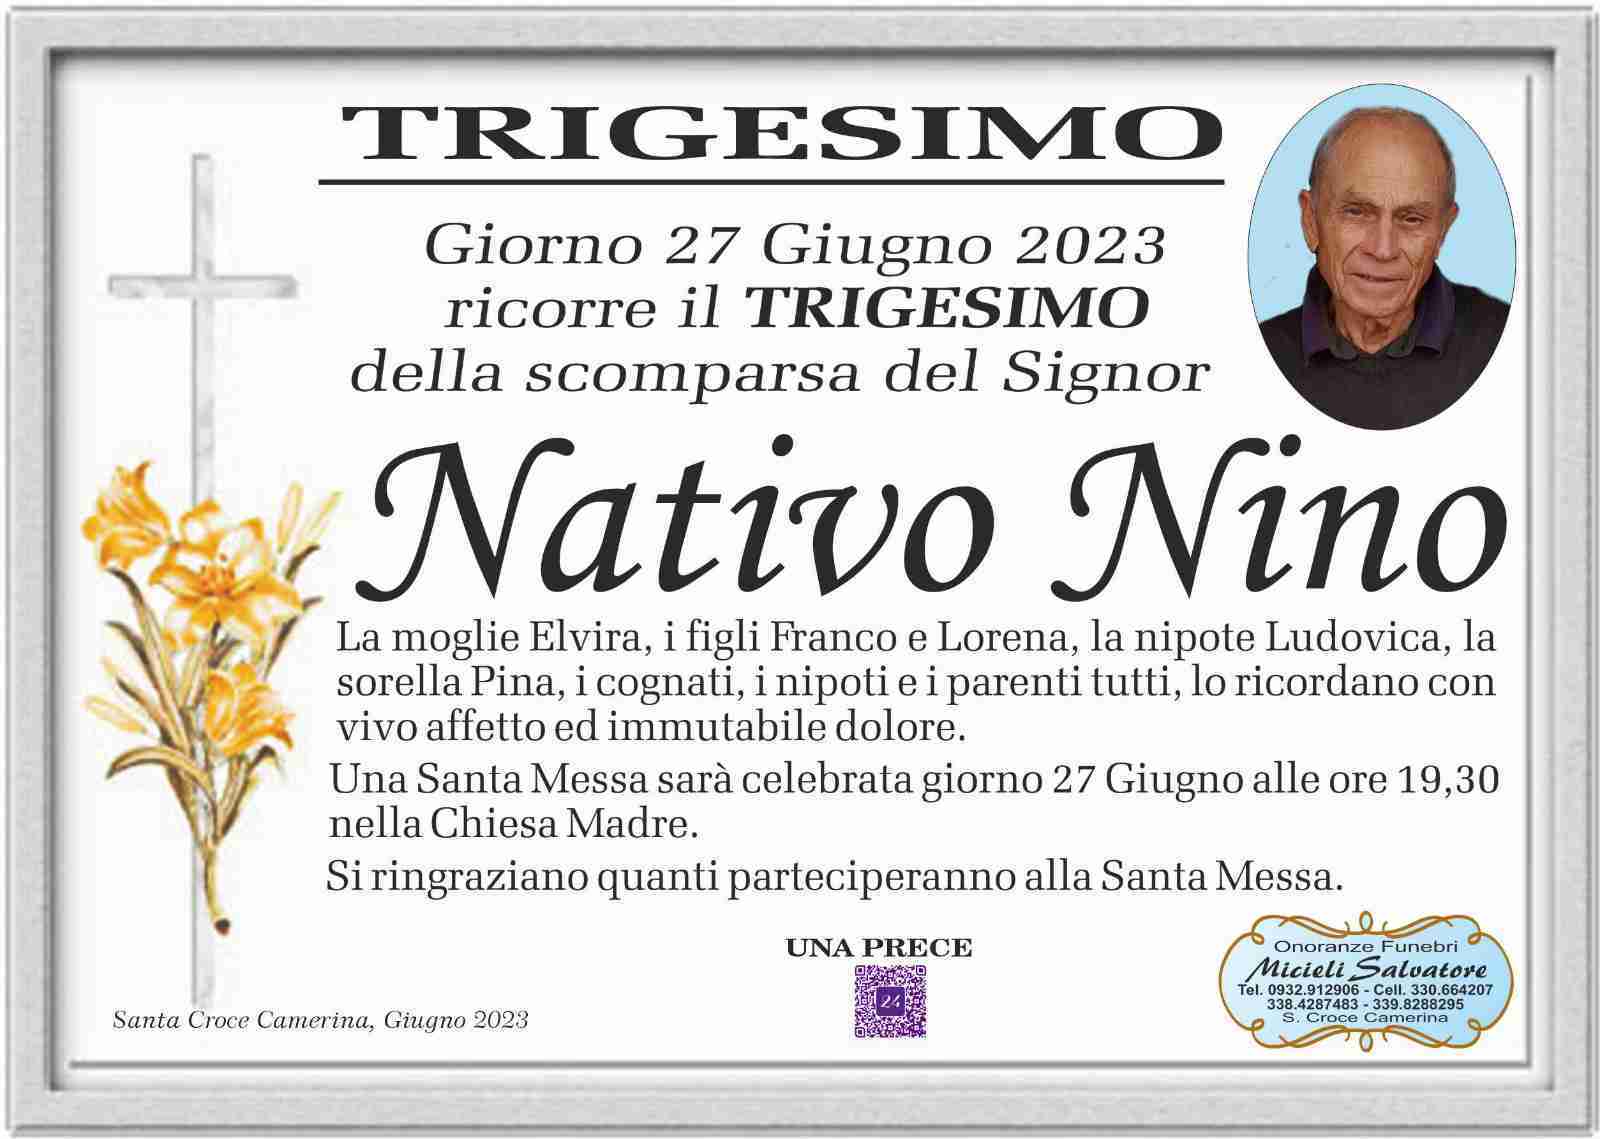 Nino Nativo